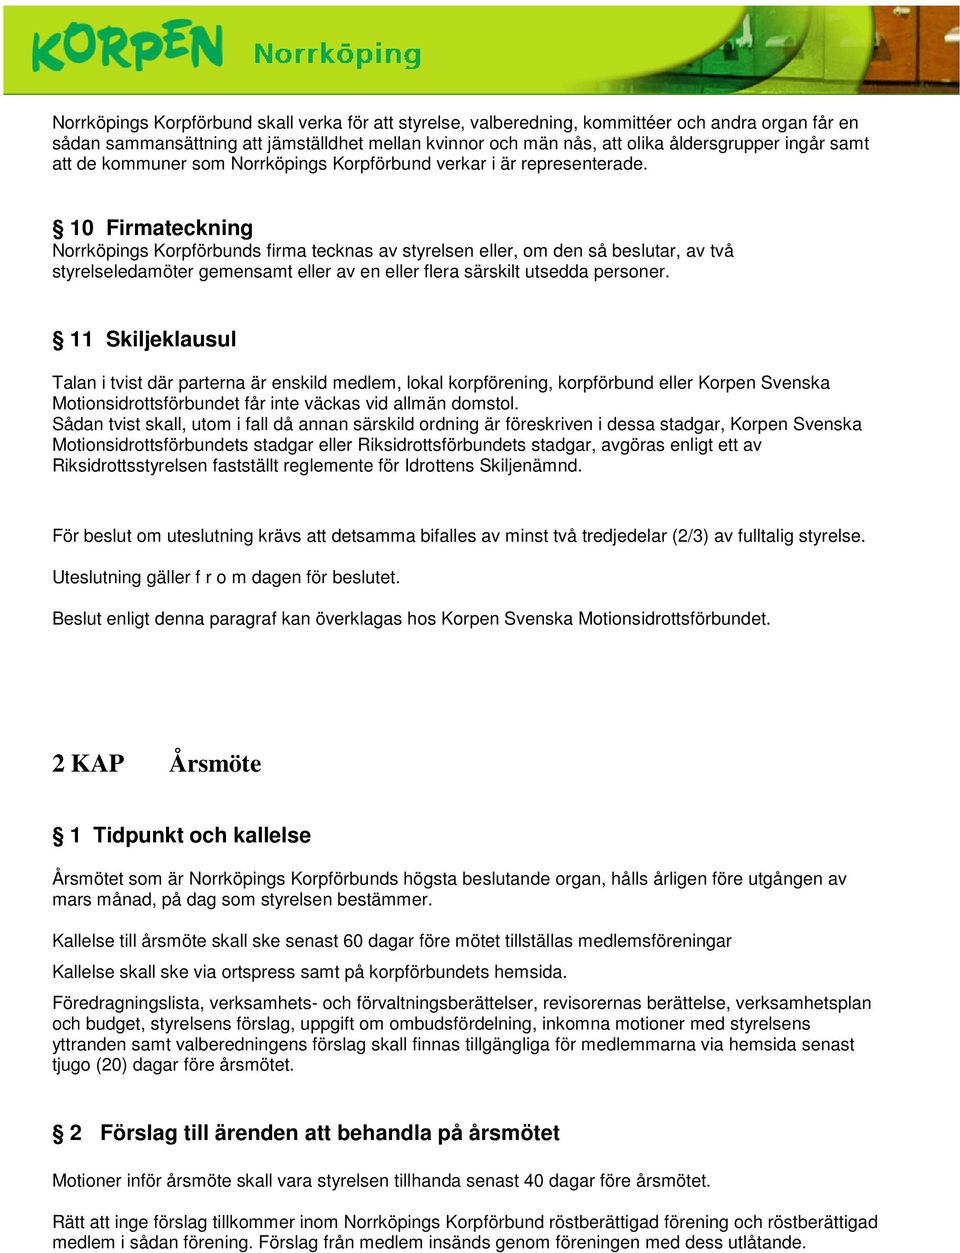 10 Firmateckning Norrköpings Korpförbunds firma tecknas av styrelsen eller, om den så beslutar, av två styrelseledamöter gemensamt eller av en eller flera särskilt utsedda personer.